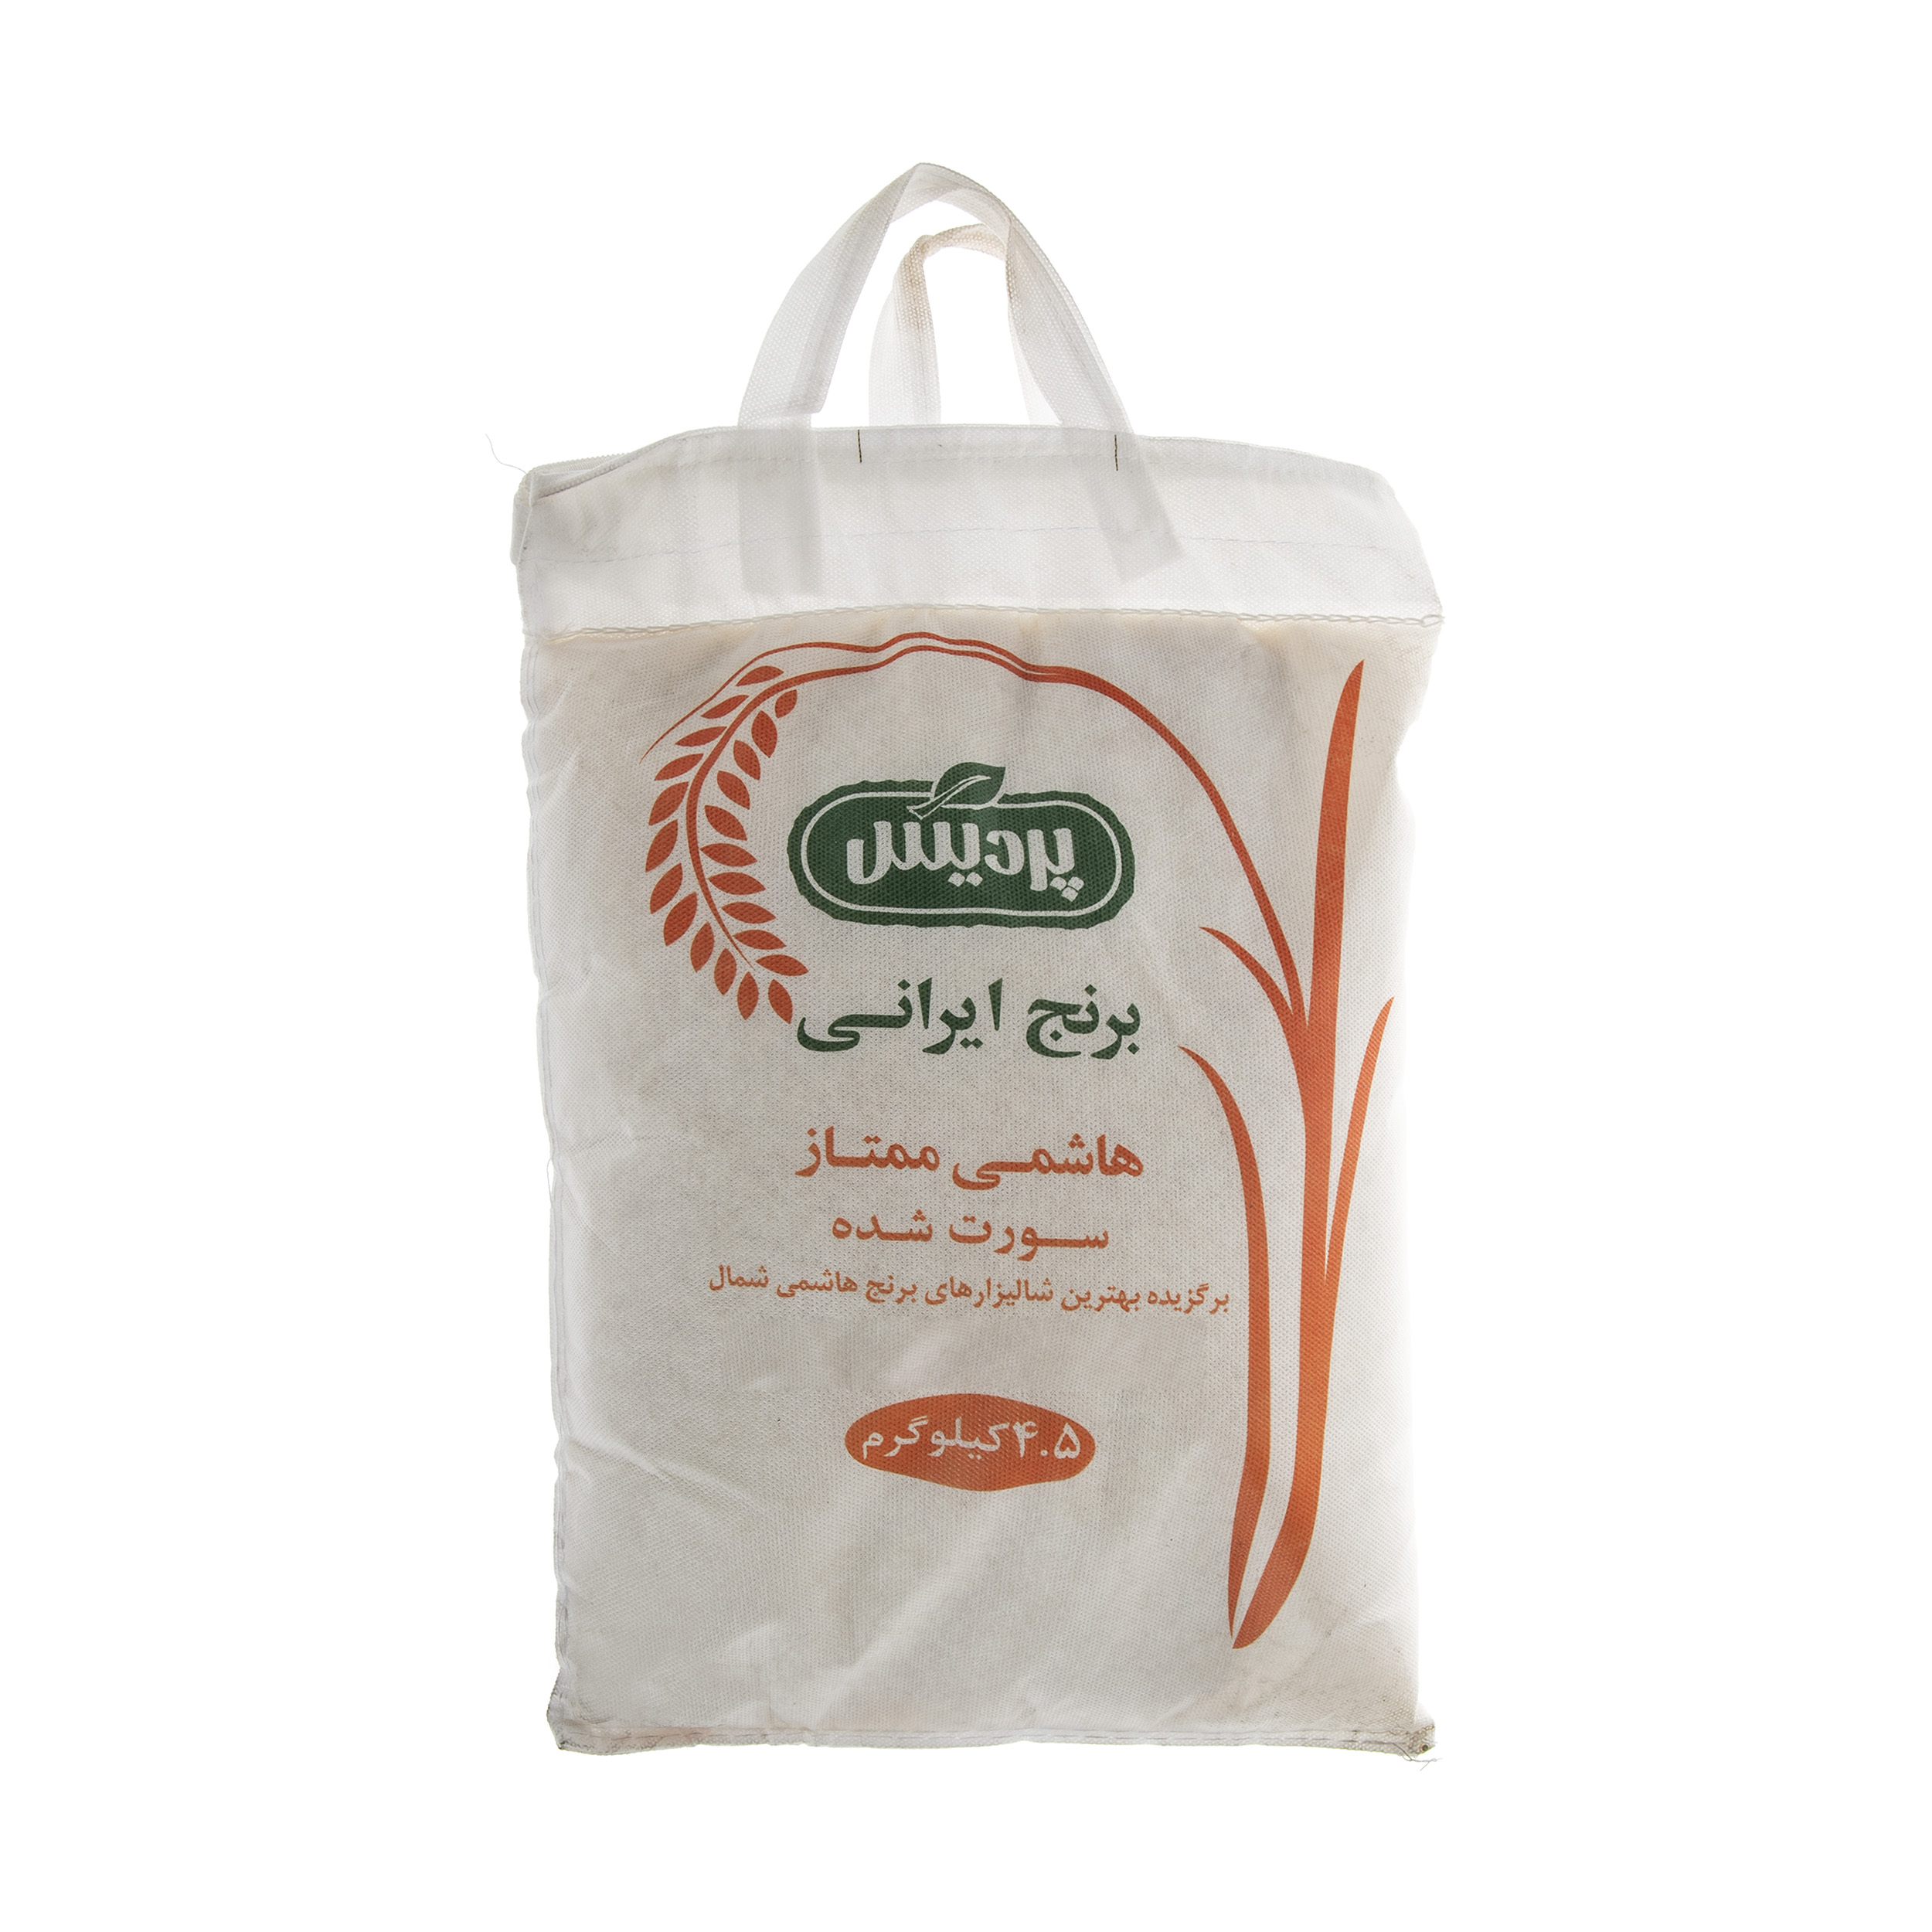 نکته خرید - قیمت روز برنج هاشمی ممتاز پردیس - 4.5 کیلوگرم خرید